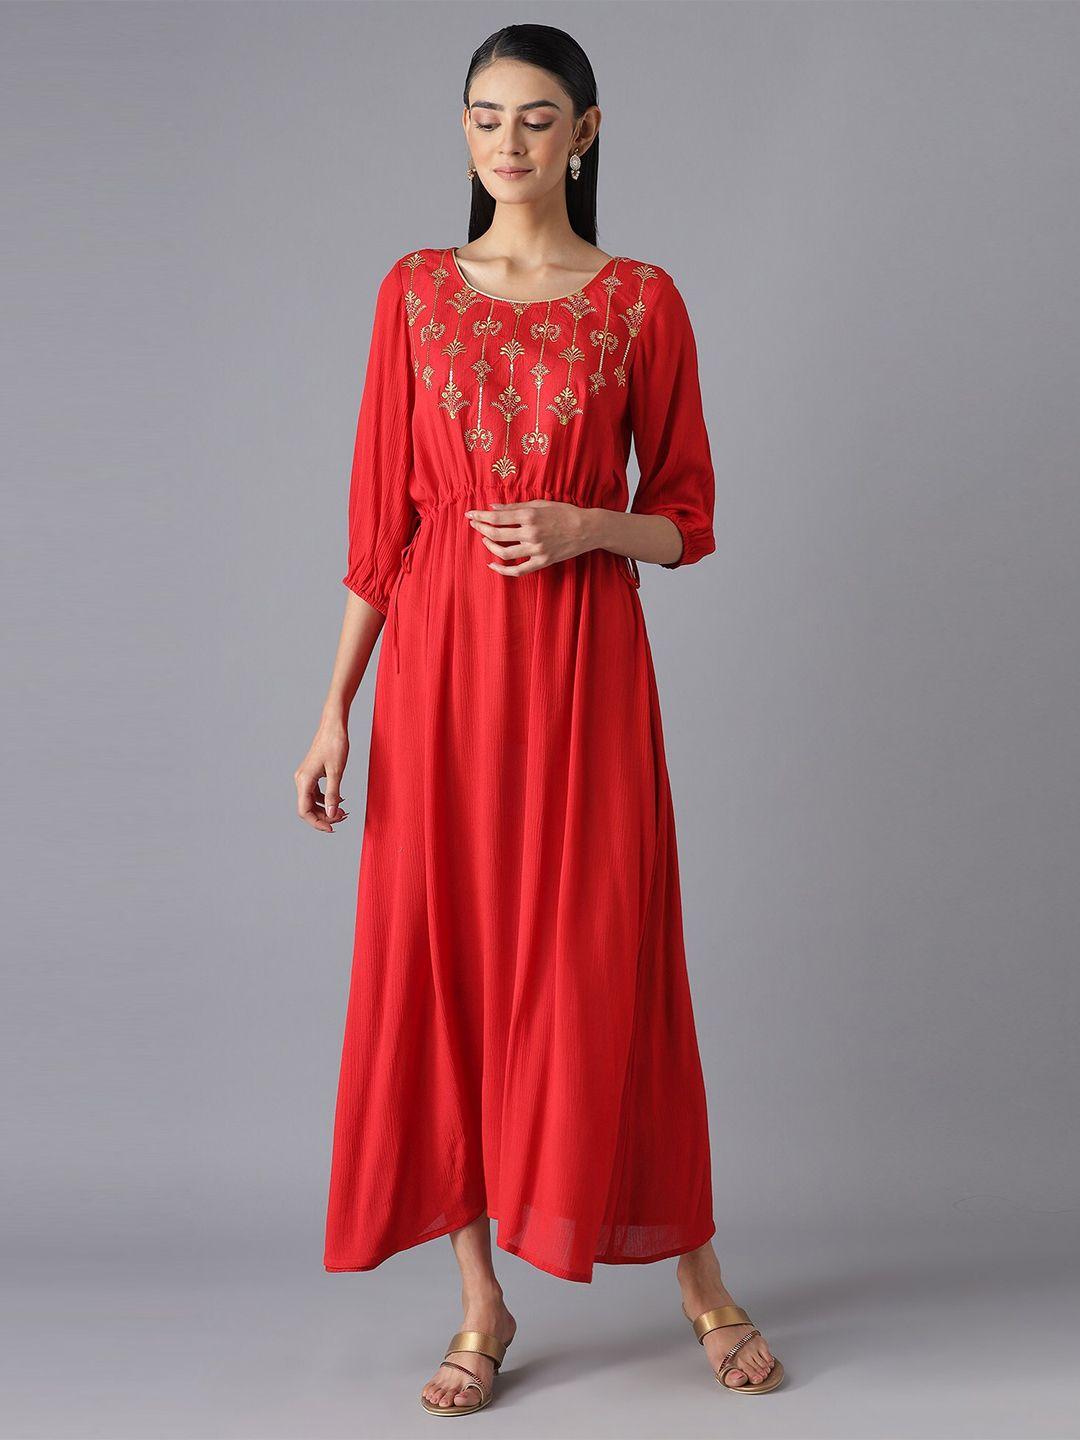 aurelia-red-ethnic-maxi-dress